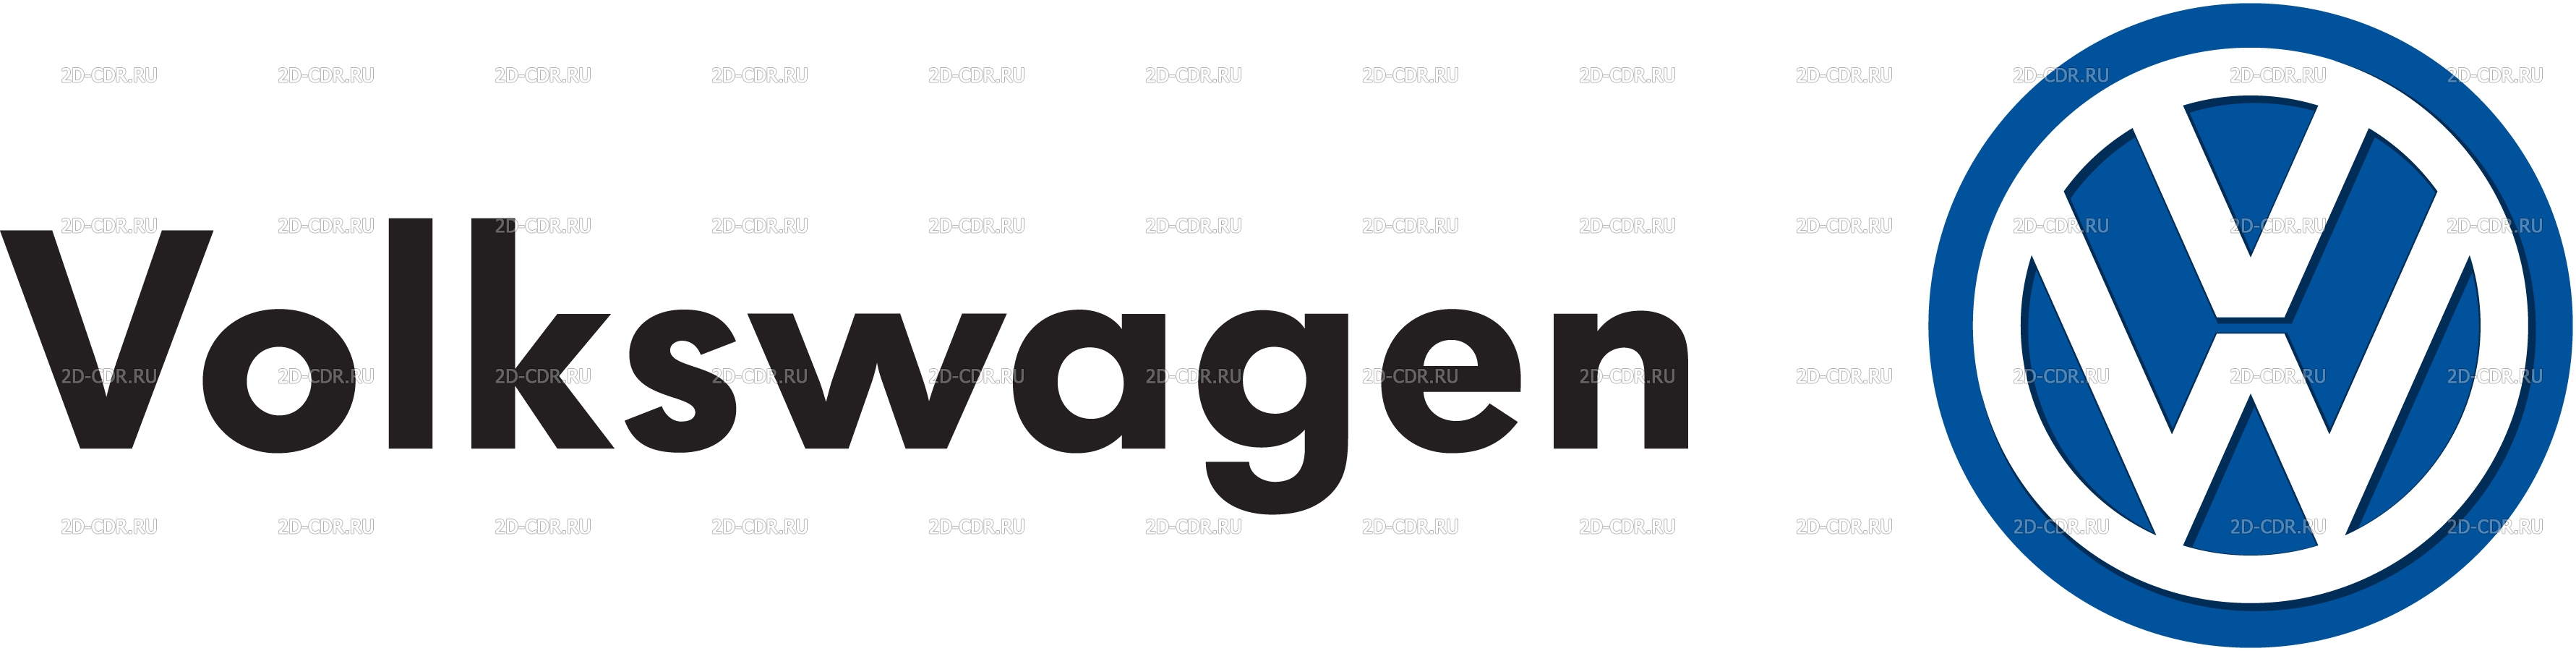 Фольксваген логотип надпись